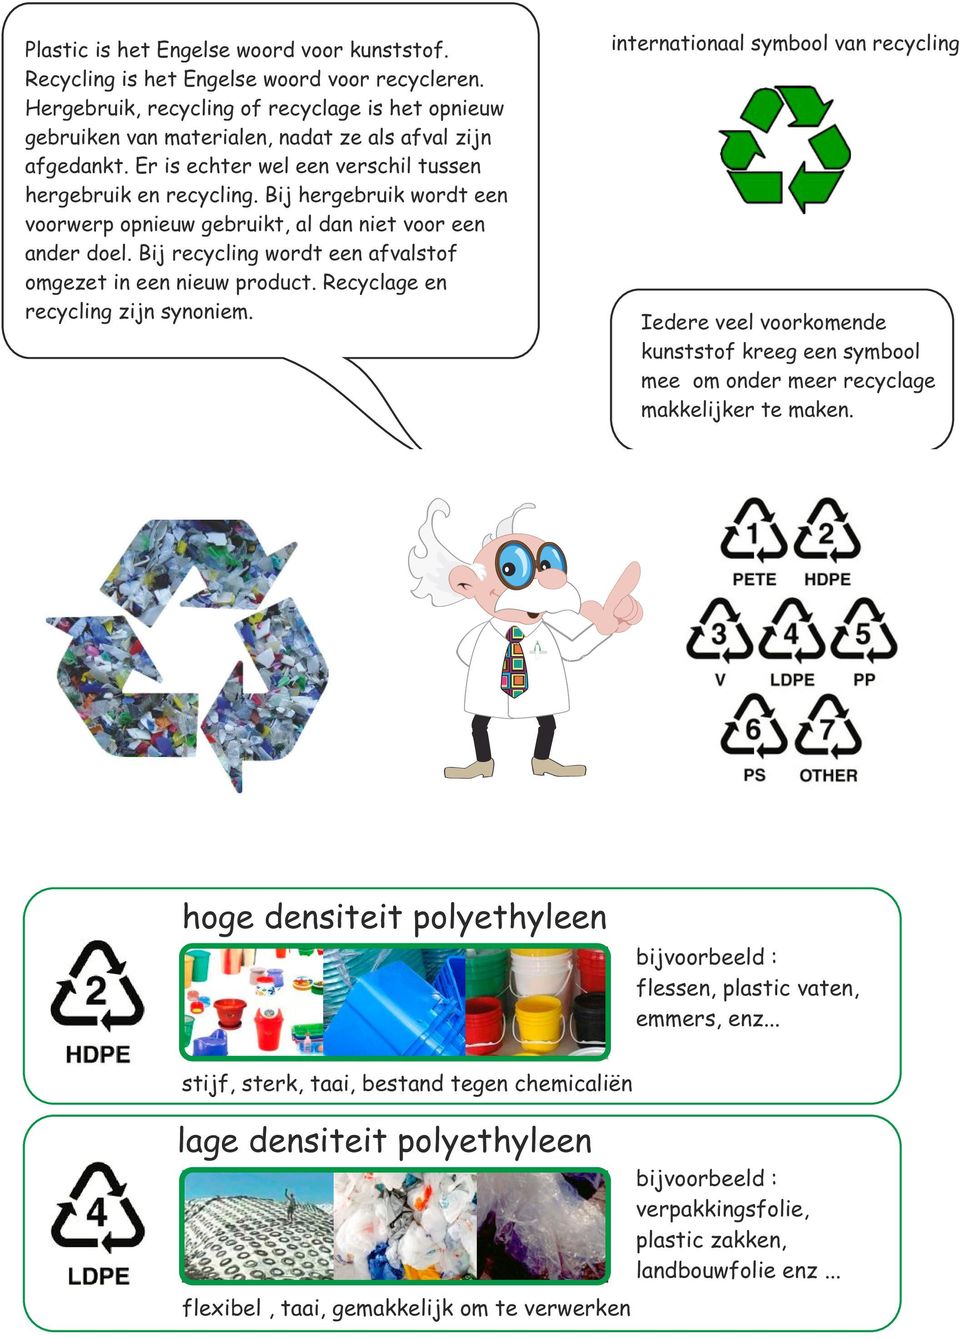 Bij hergebruik wordt een voorwerp opnieuw gebruikt, al dan niet voor een ander doel. Bij recycling wordt een afvalstof omgezet in een nieuw product. Recyclage en recycling zijn synoniem.